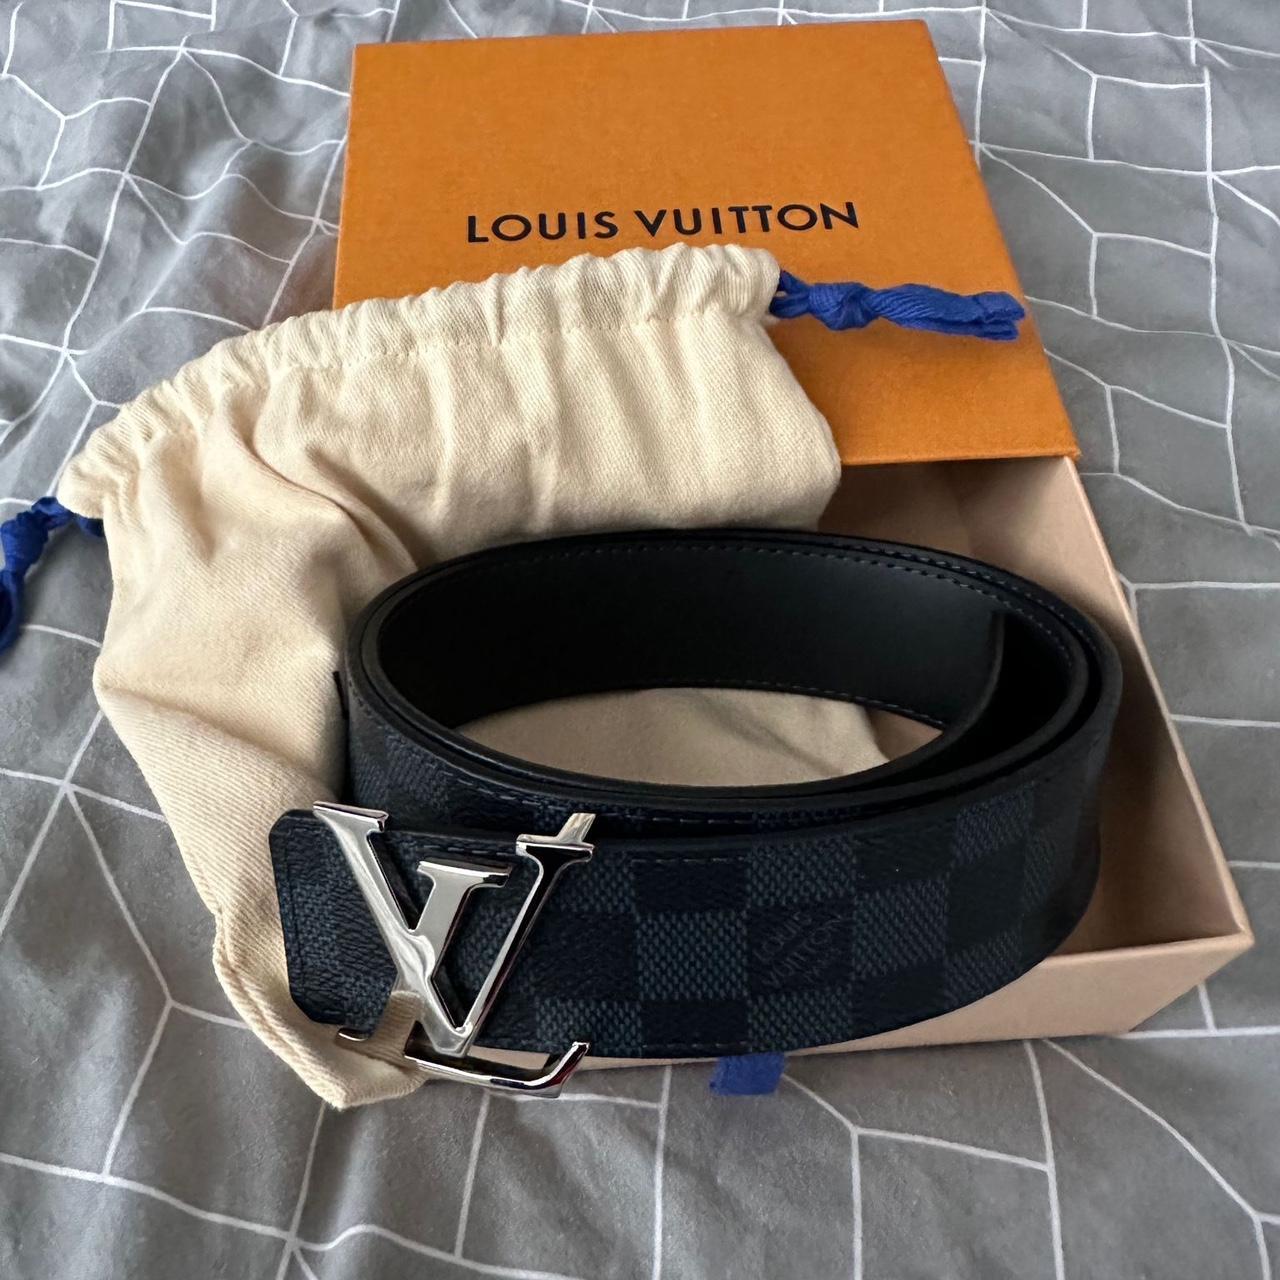 Men’s blue Louis Vuitton belt 34 inches. Excellent